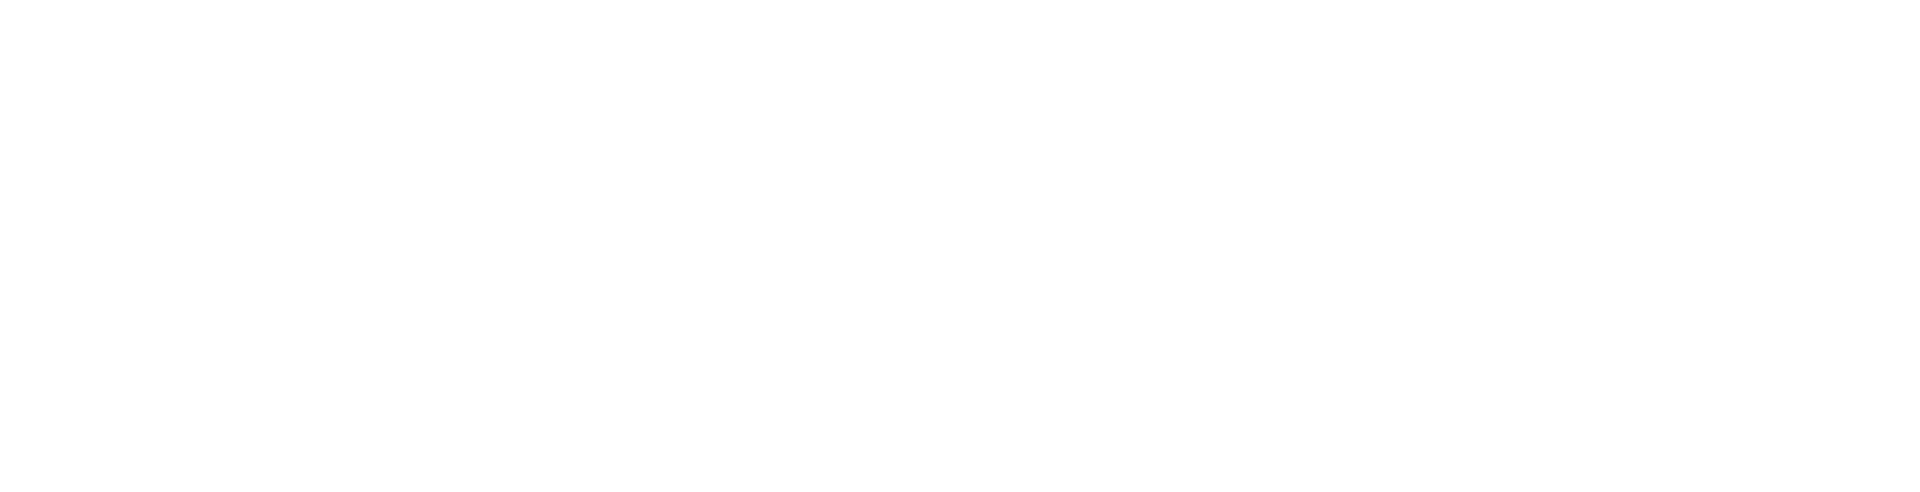 (02) SimpleDrop - COMPLETA